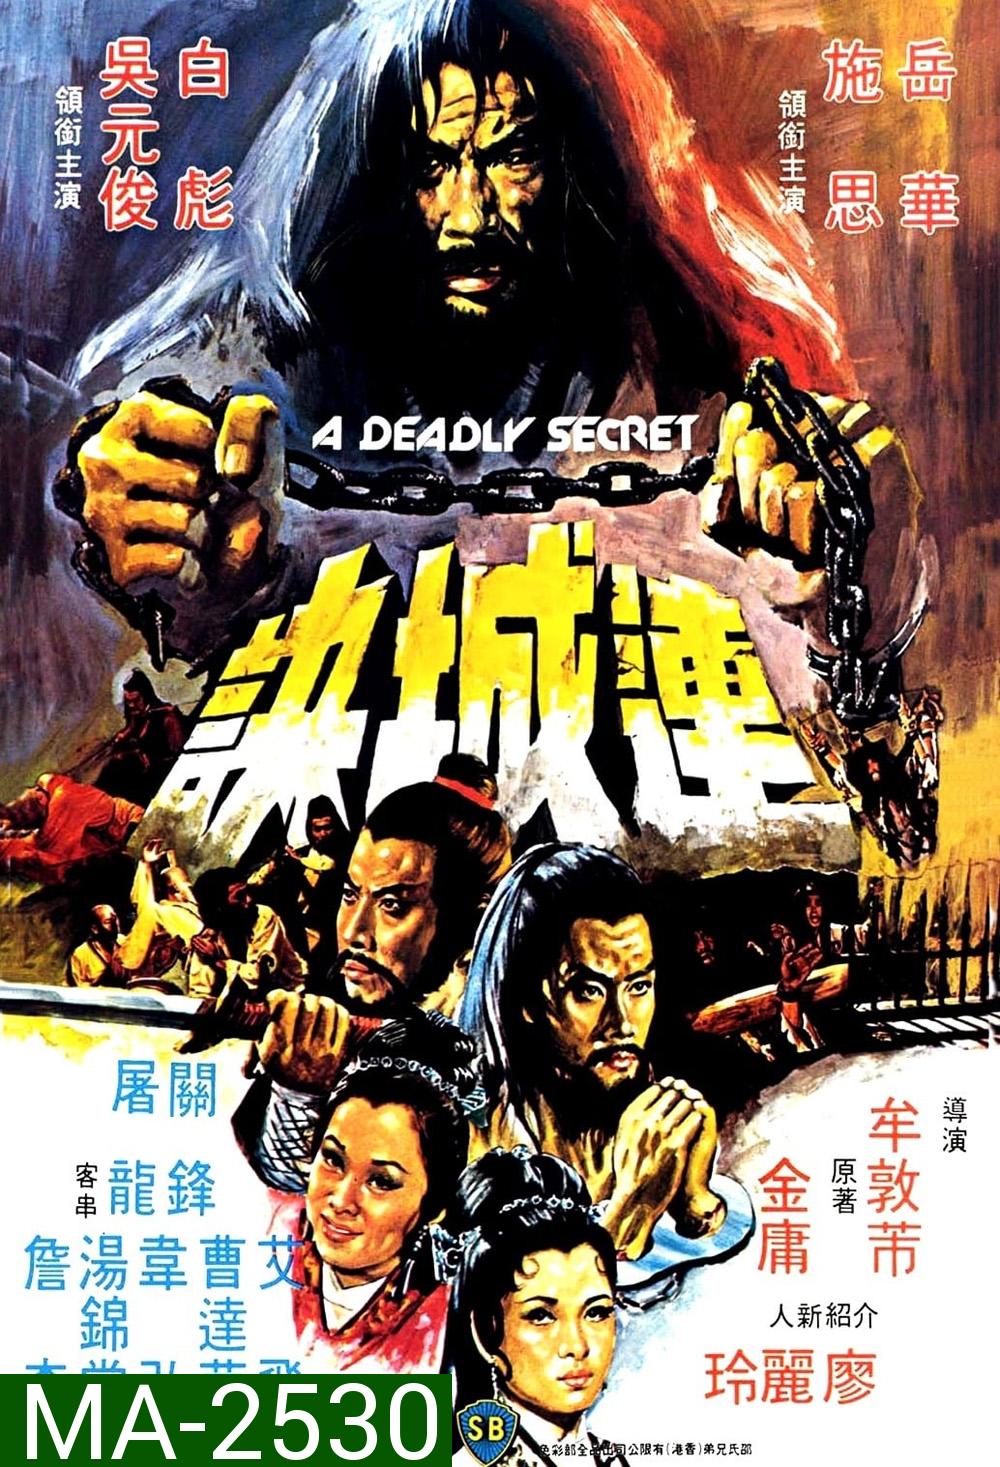 A Deadly Secret [Lian Cheng Jue] (1980) ศึกวังไข่มุก